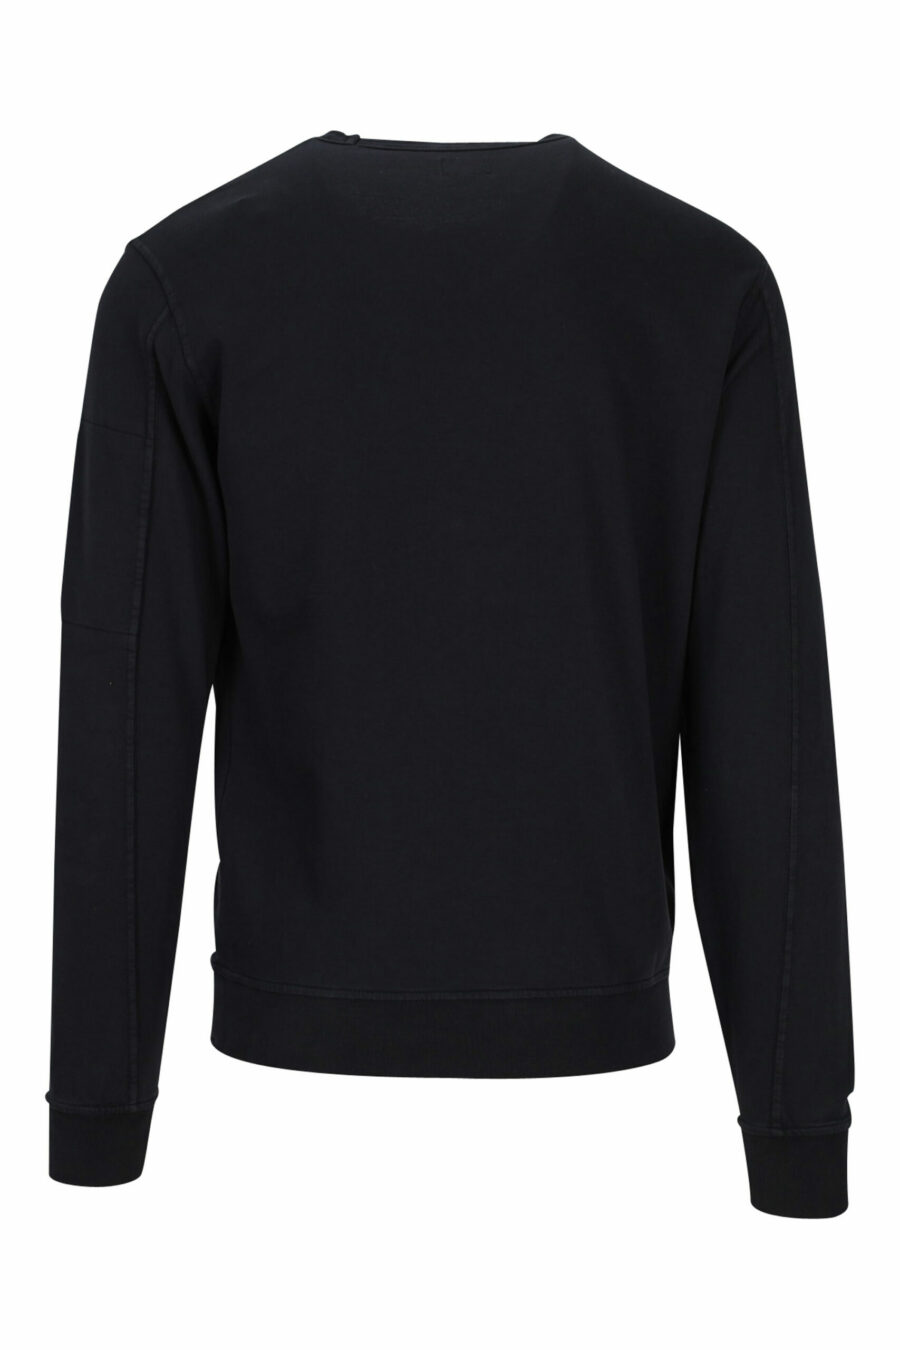 Schwarzes Sweatshirt mit seitlicher Linse minilogue - 7620943592191 2 skaliert